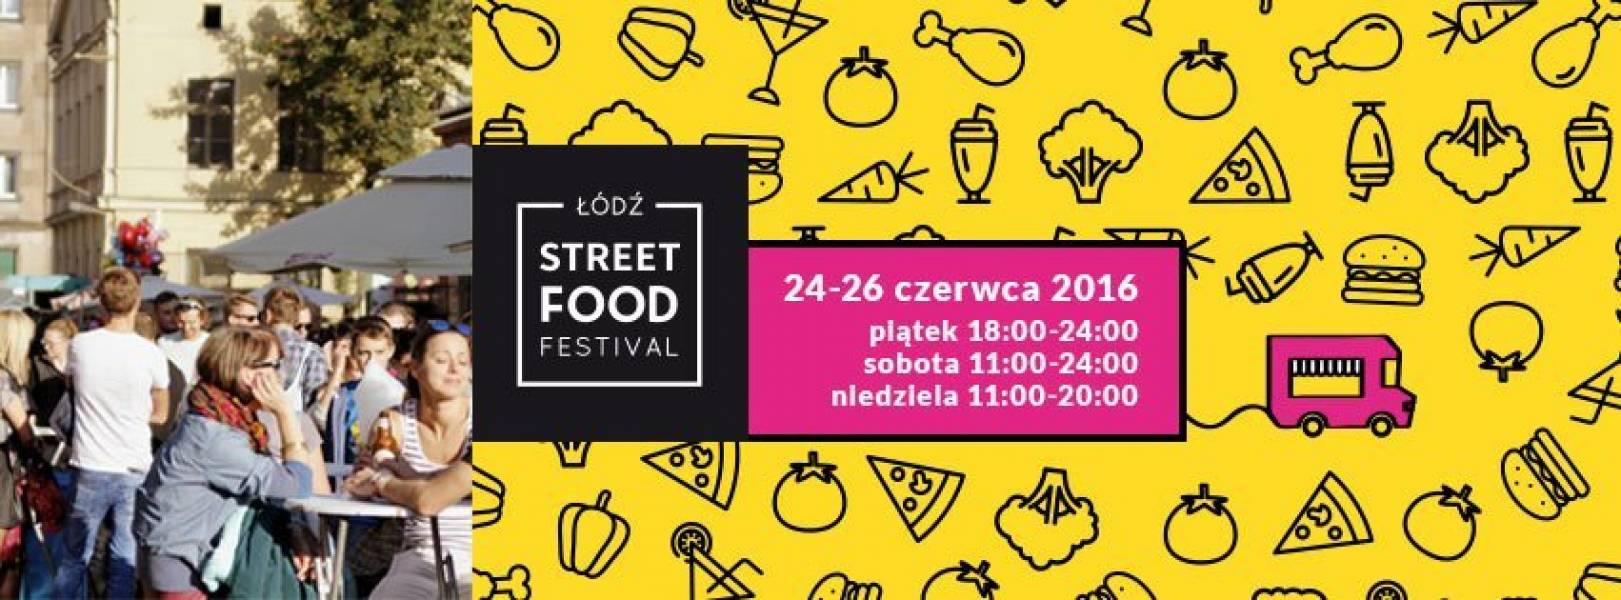 24-26 CZERWCA – STREET FOOD FESTIVAL VOL 11 – ŁÓDŹ